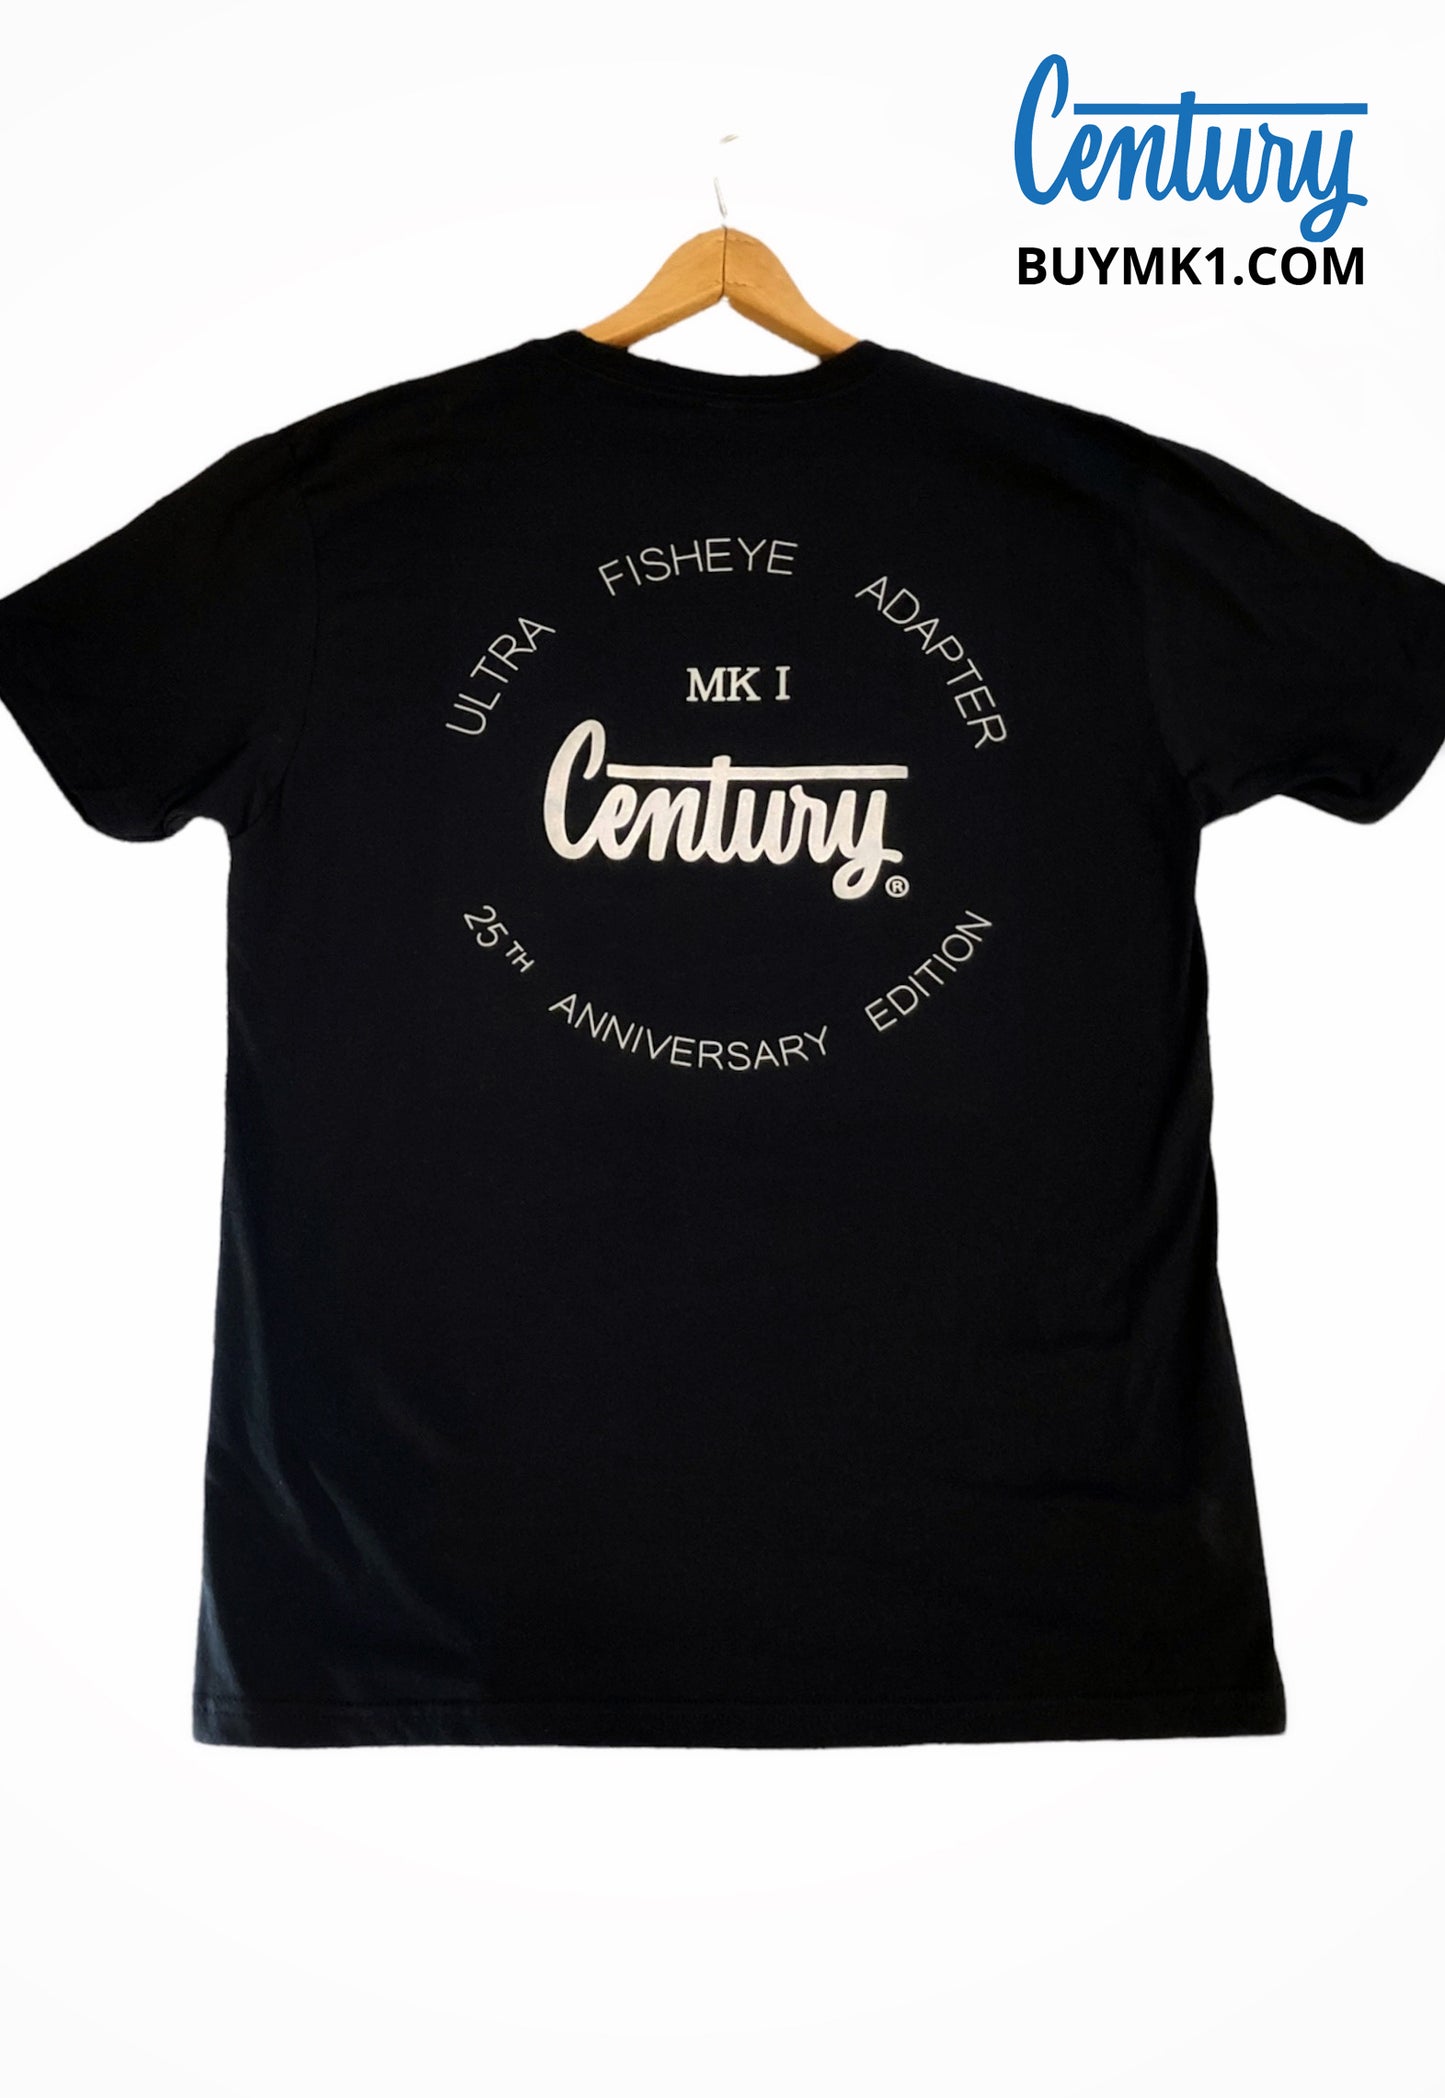 Century MK1 25th Anniversary T-Shirt (Black)